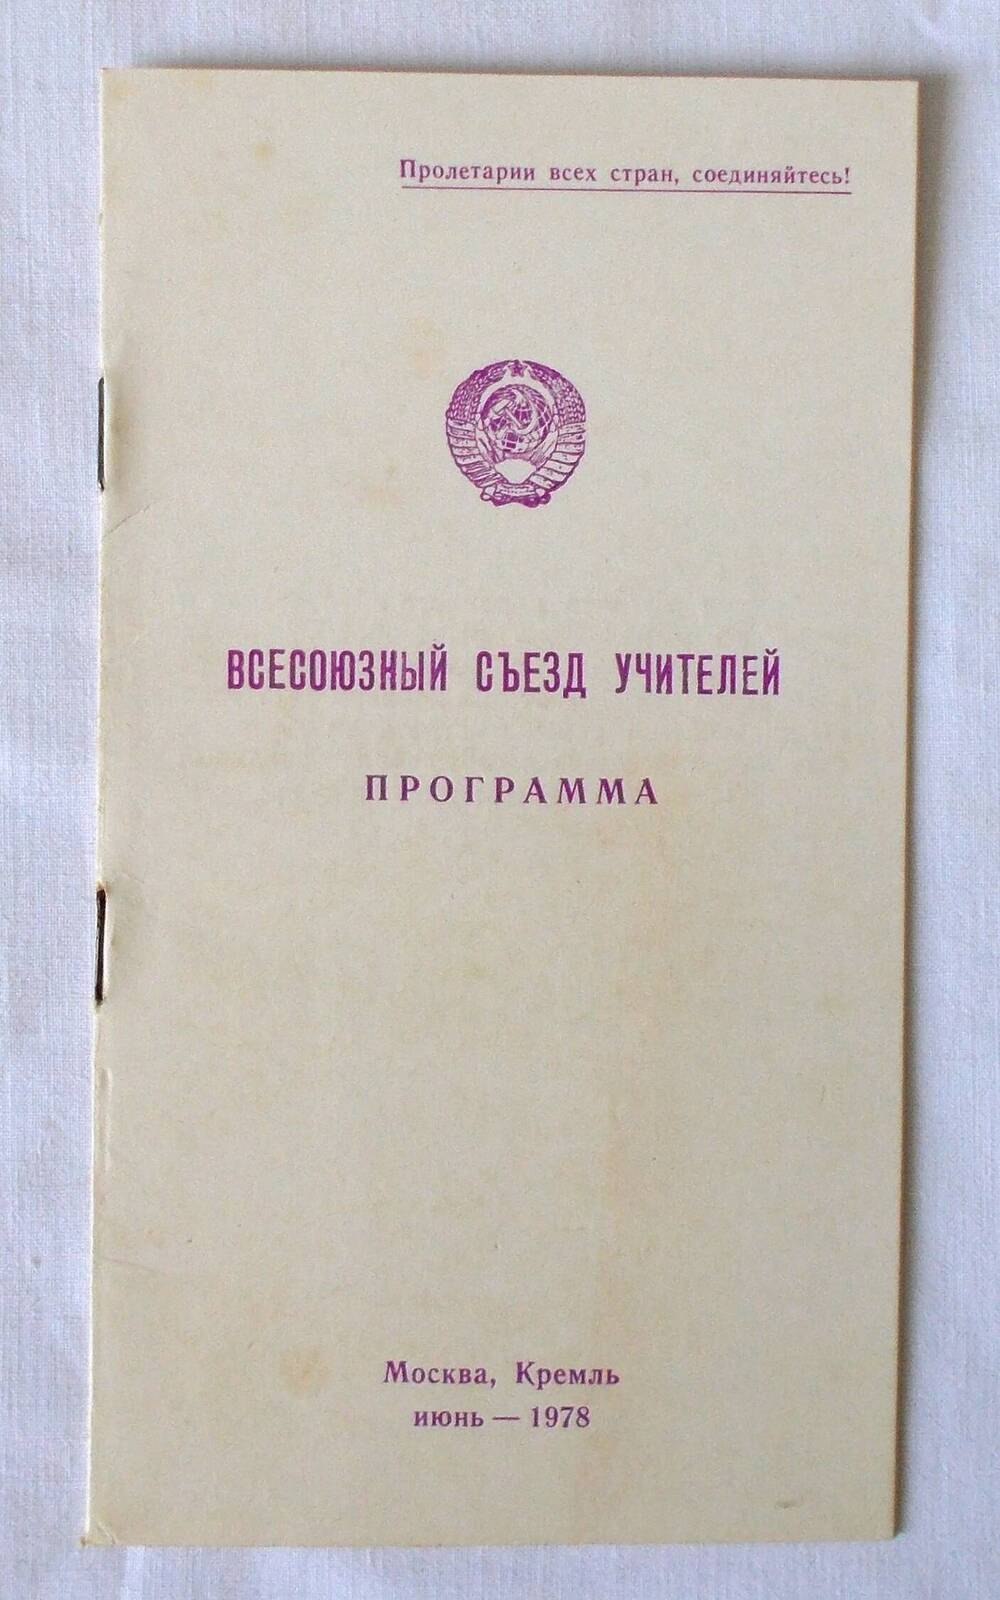 Программа Всесоюзного съезда учителей. 1978 г.